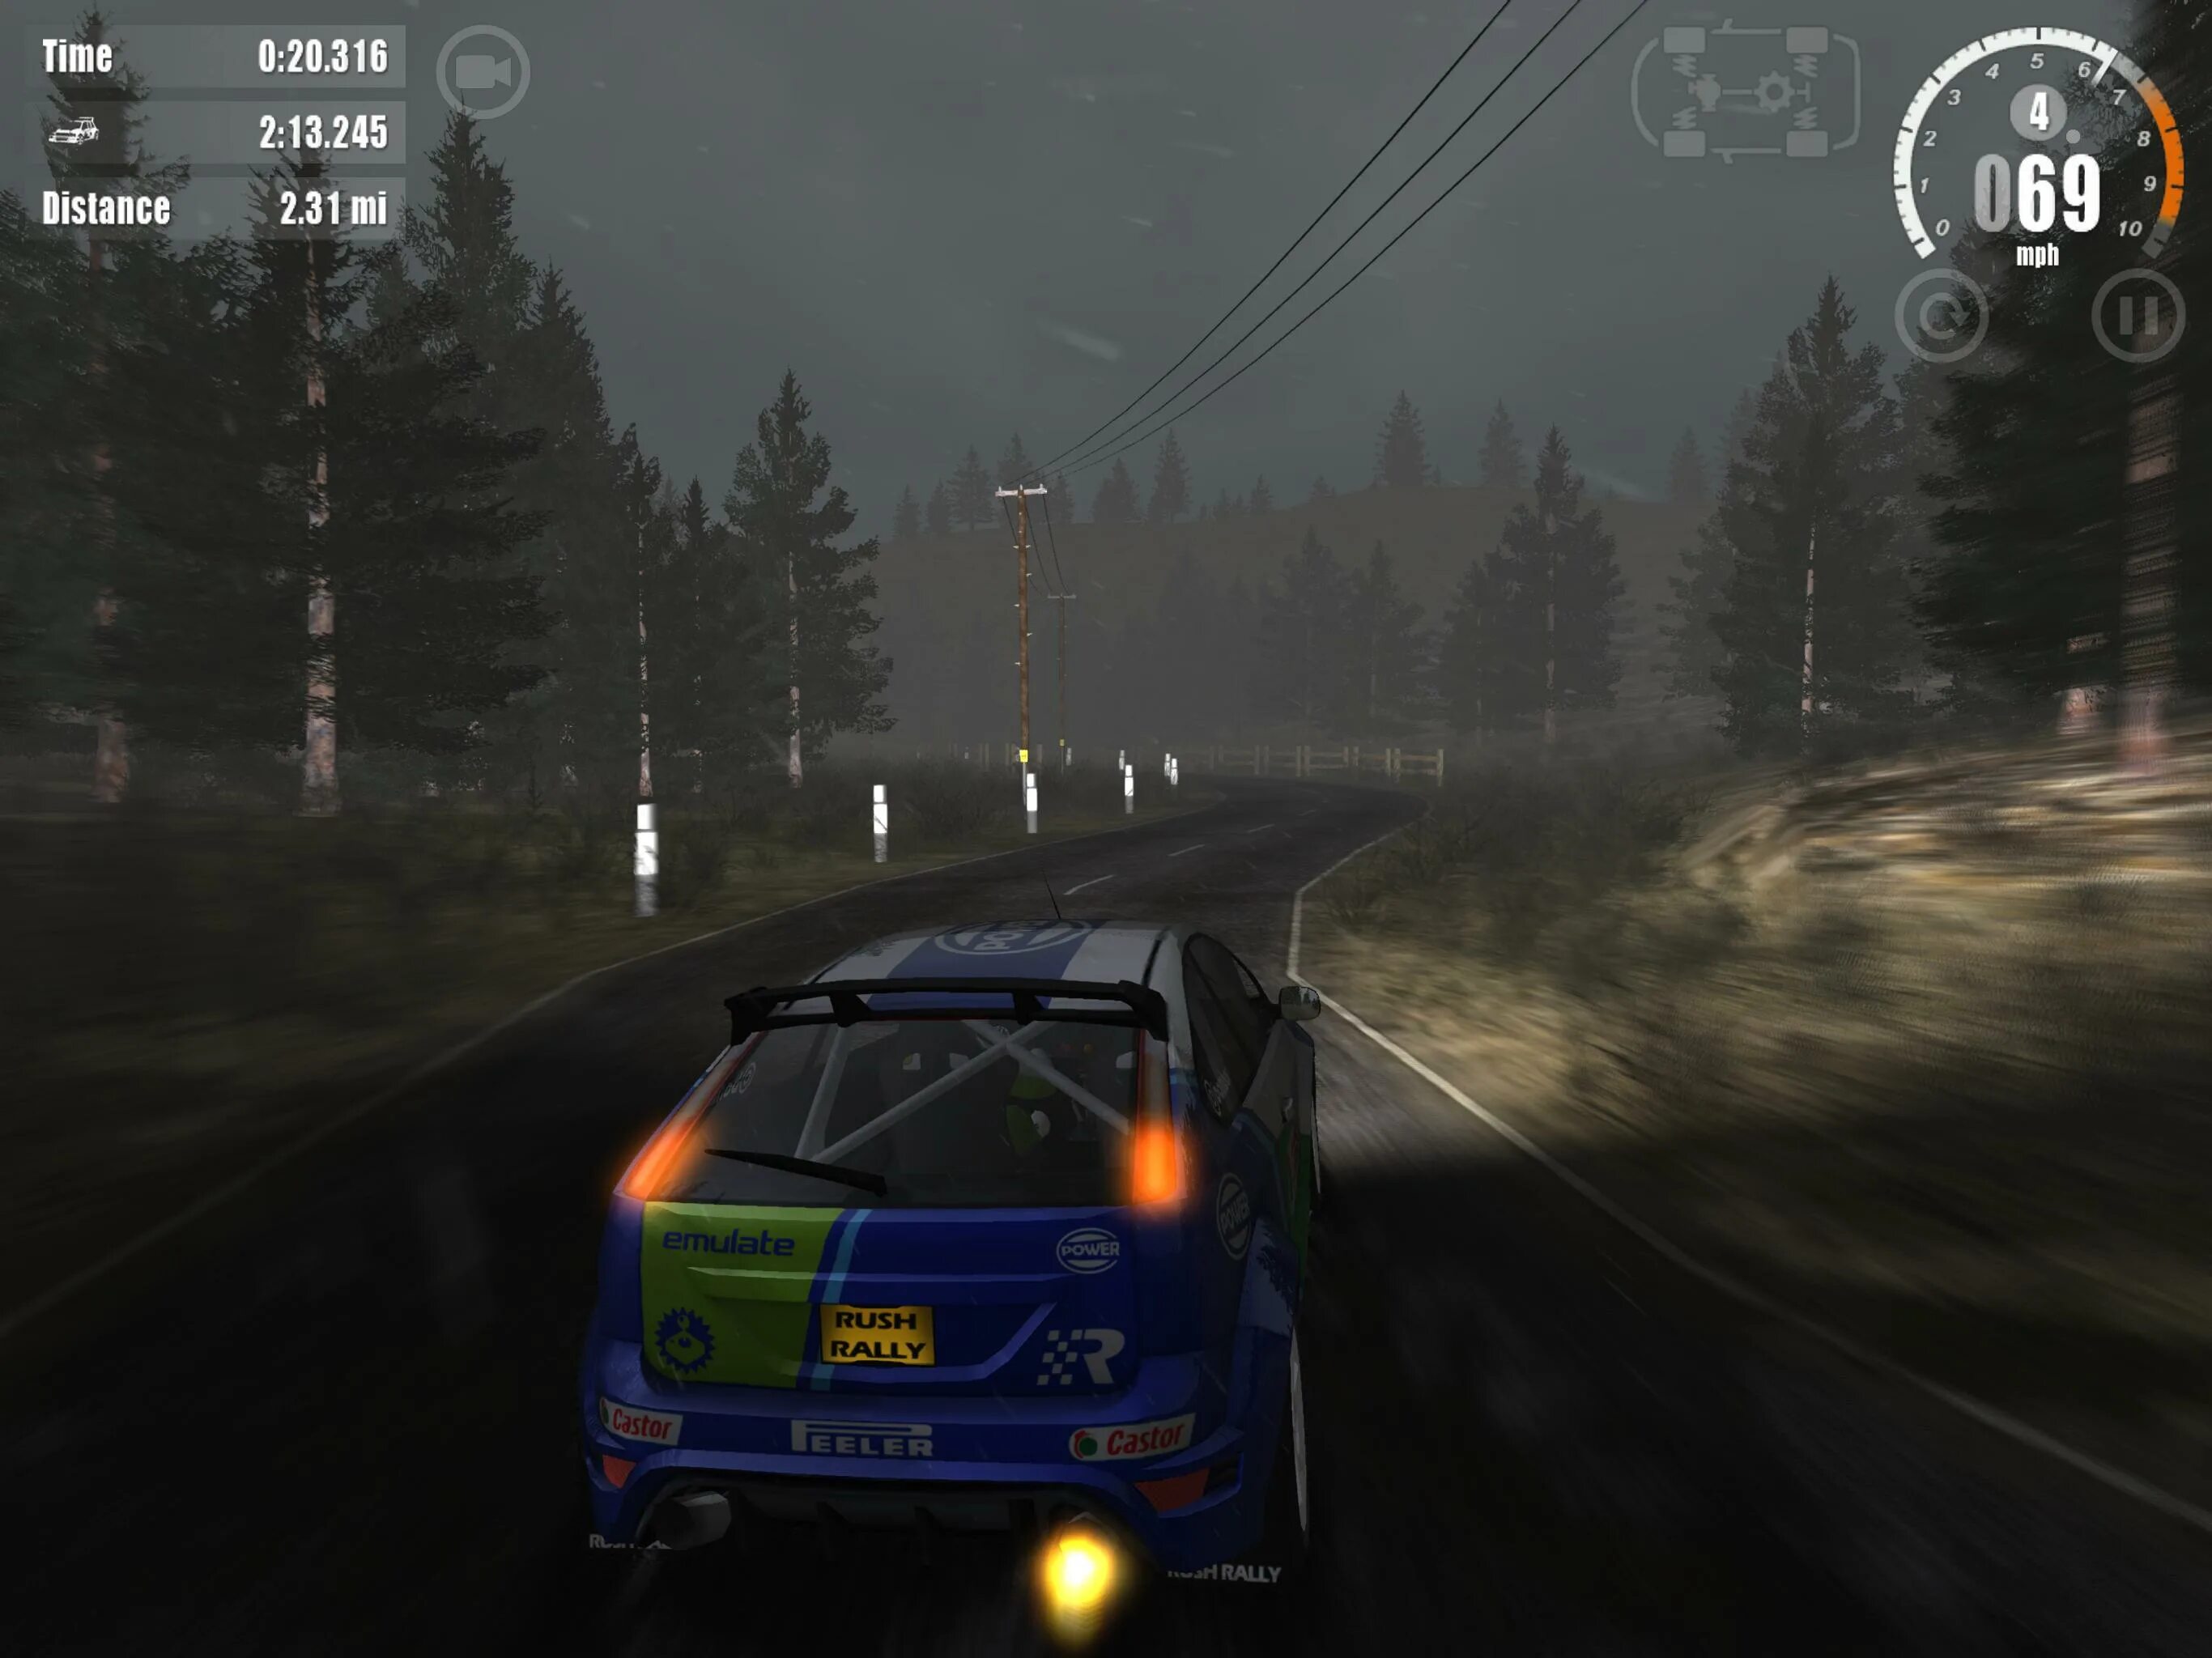 Rush Rally 3. Rush Rally 3 Android. Rush Rally 3 PC. Rush Rally 5. Rush rally 3 андроид